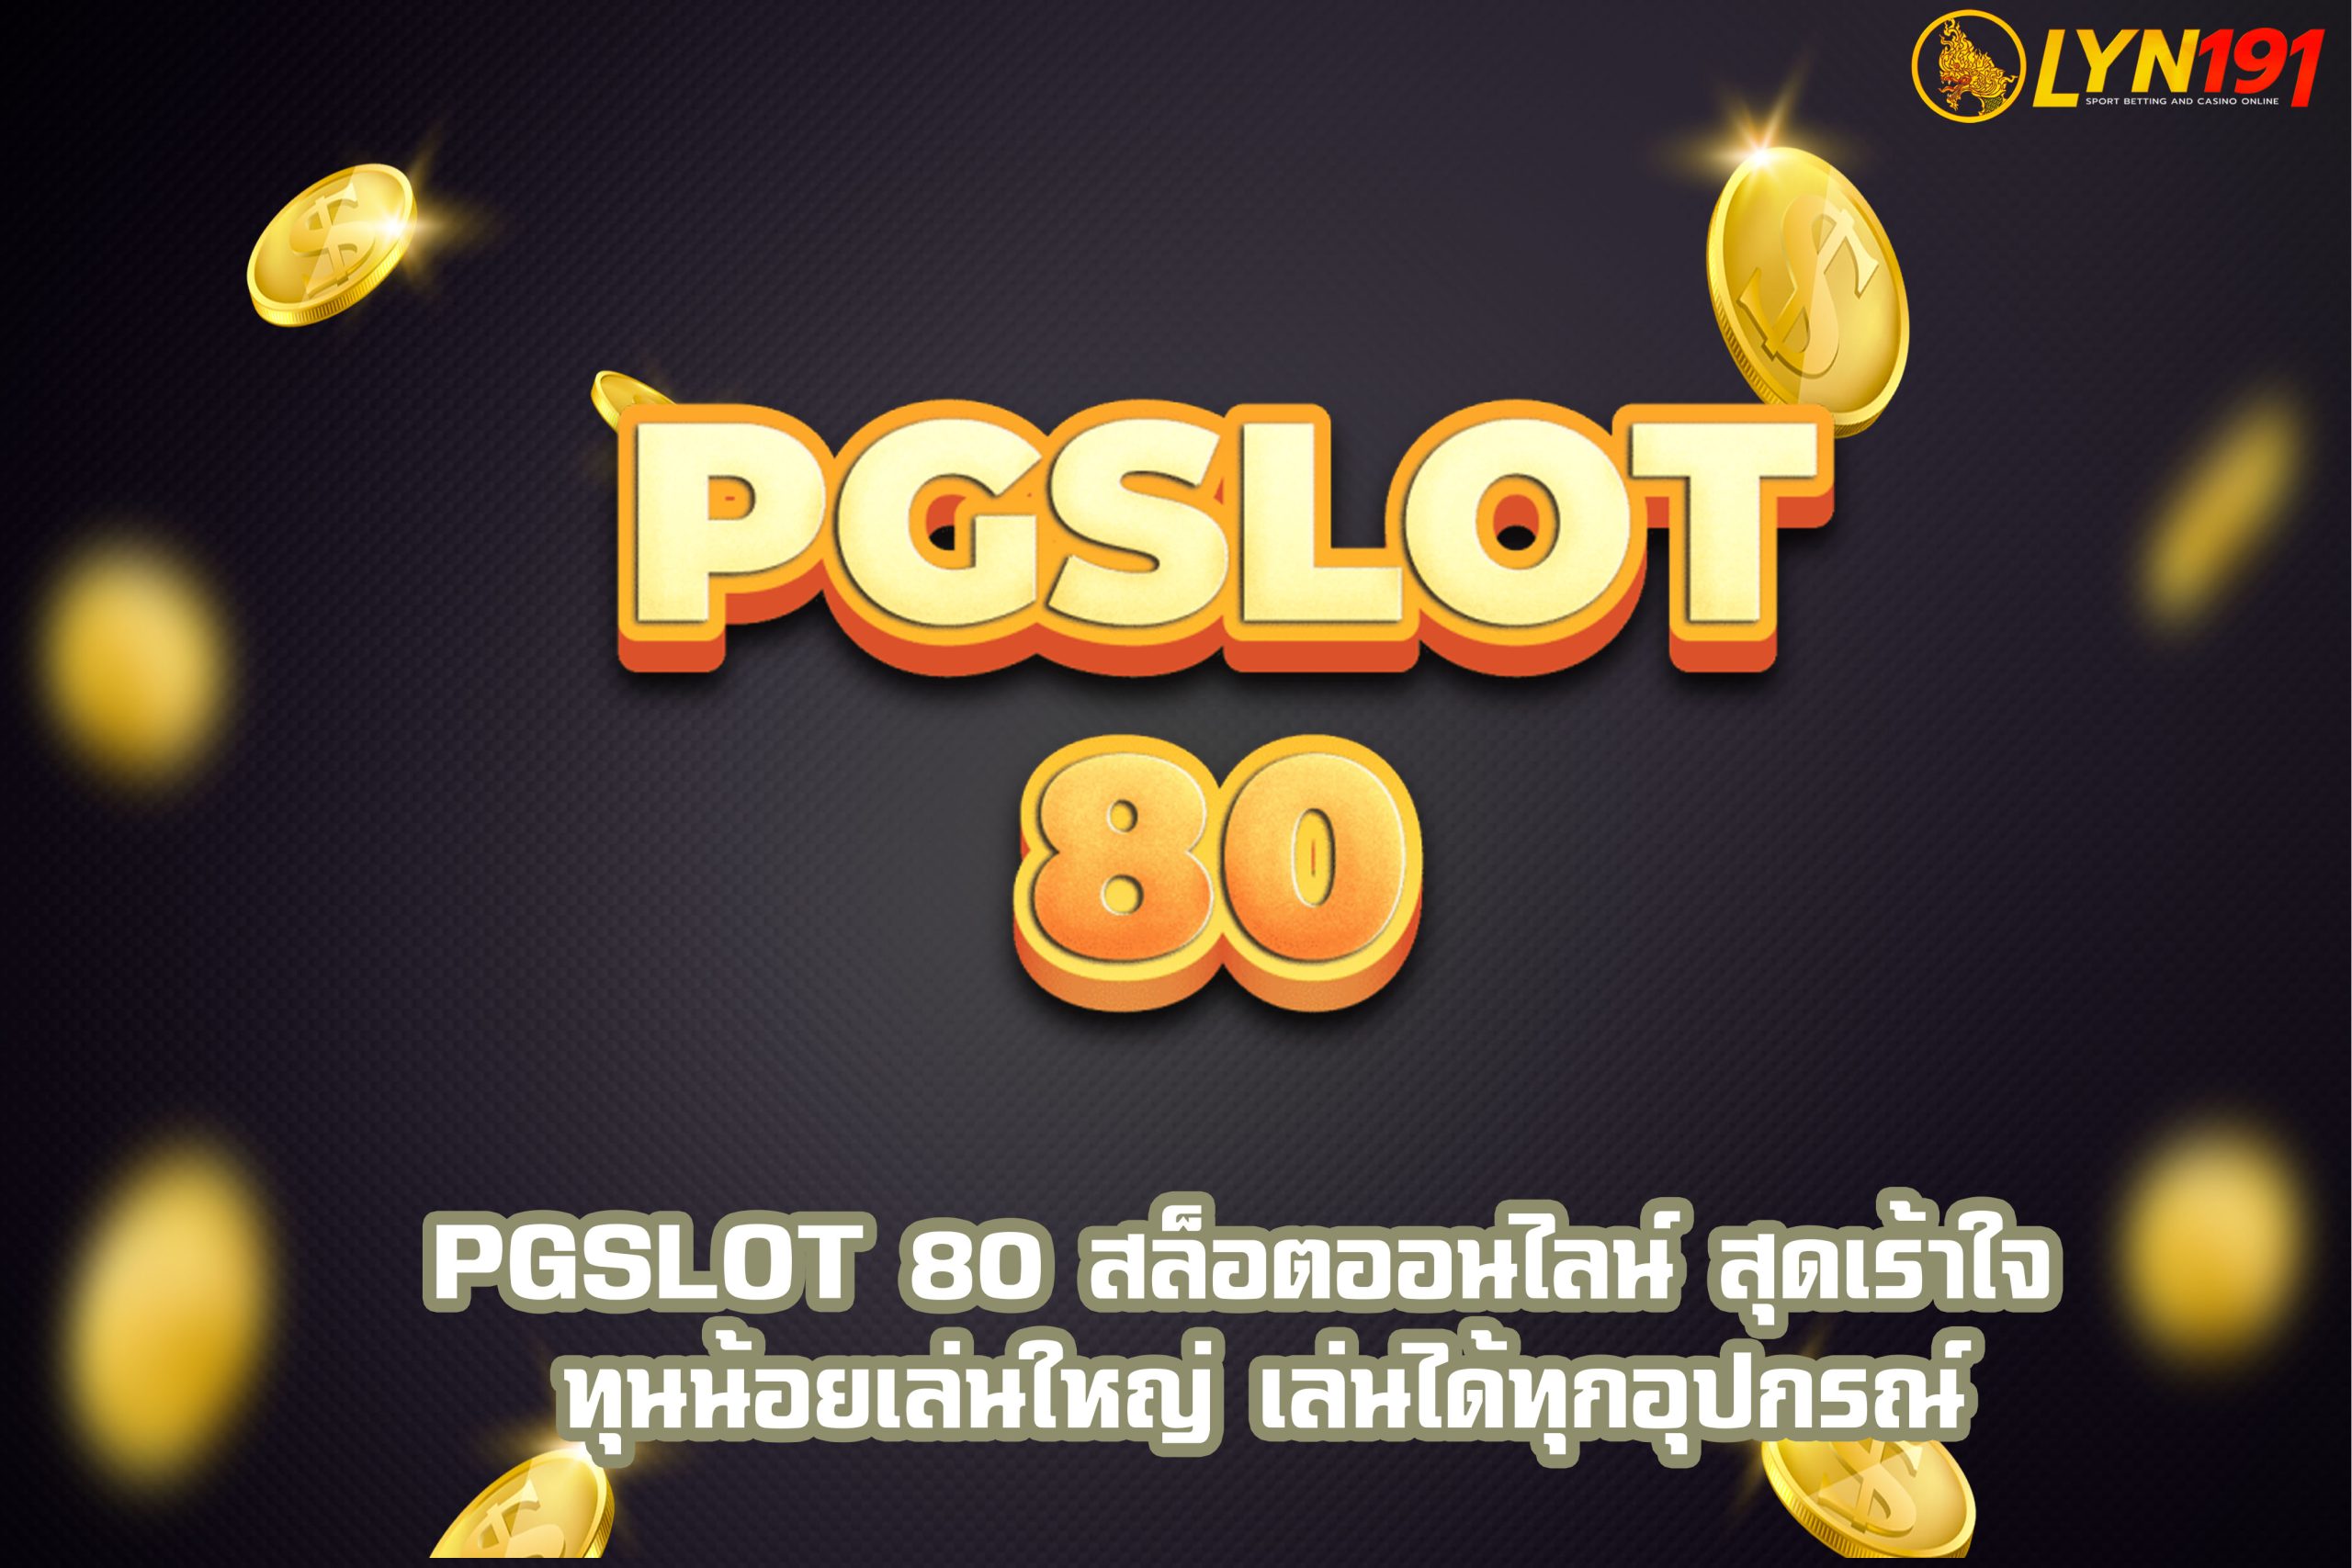 PGSLOT 80 สล็อตออนไลน์ สุดเร้าใจ ทุนน้อยเล่นใหญ่ เล่นได้ทุกอุปกรณ์